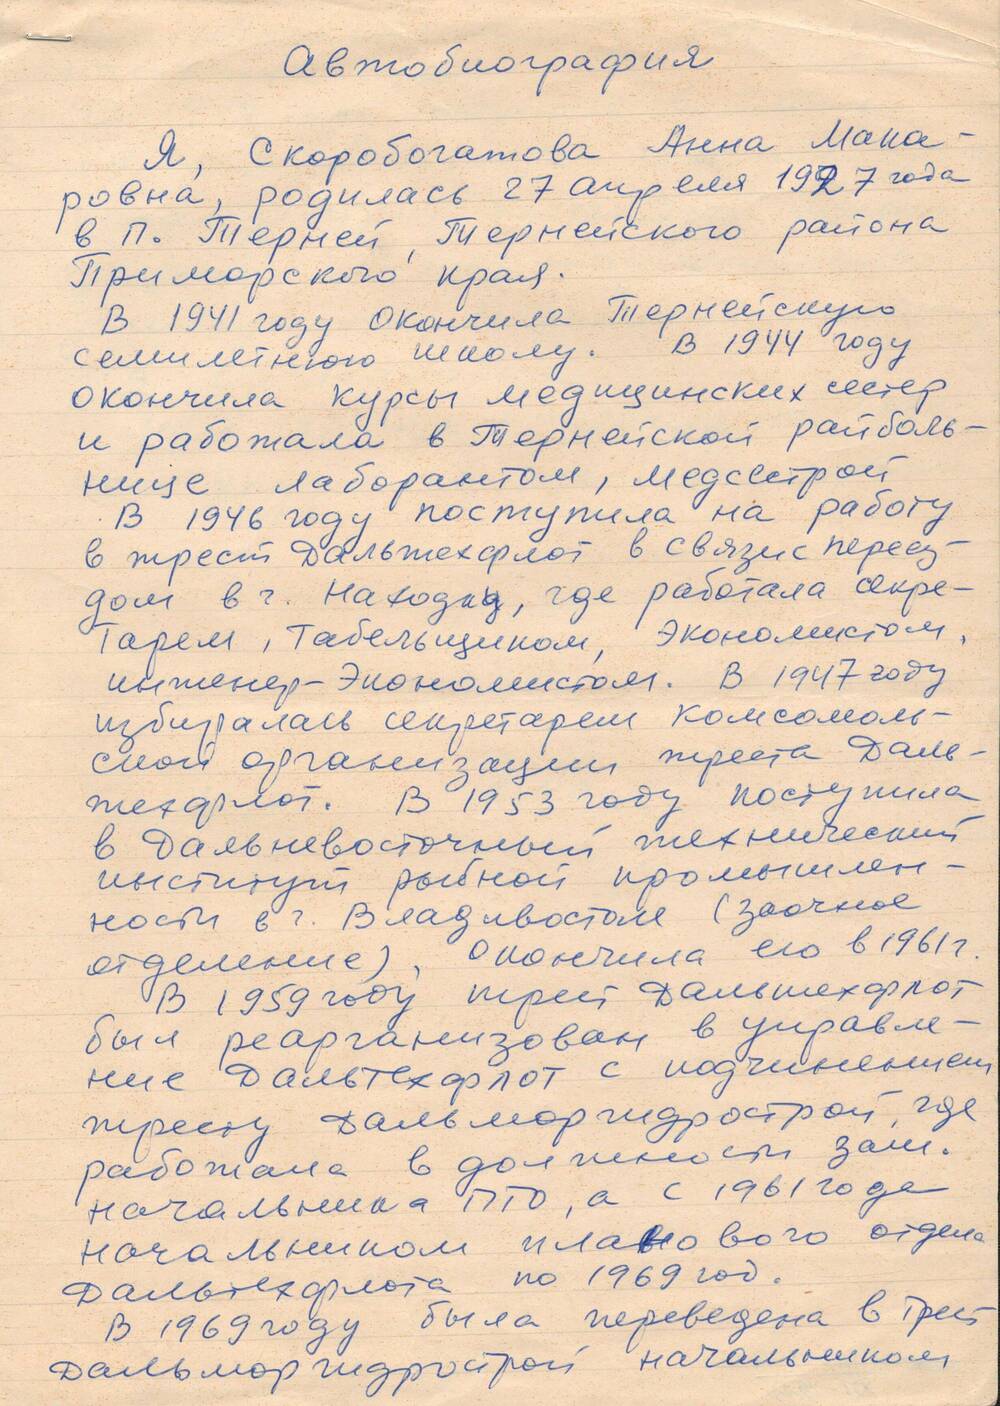 Автобиография Скоробогатовой Анны Макаровны.